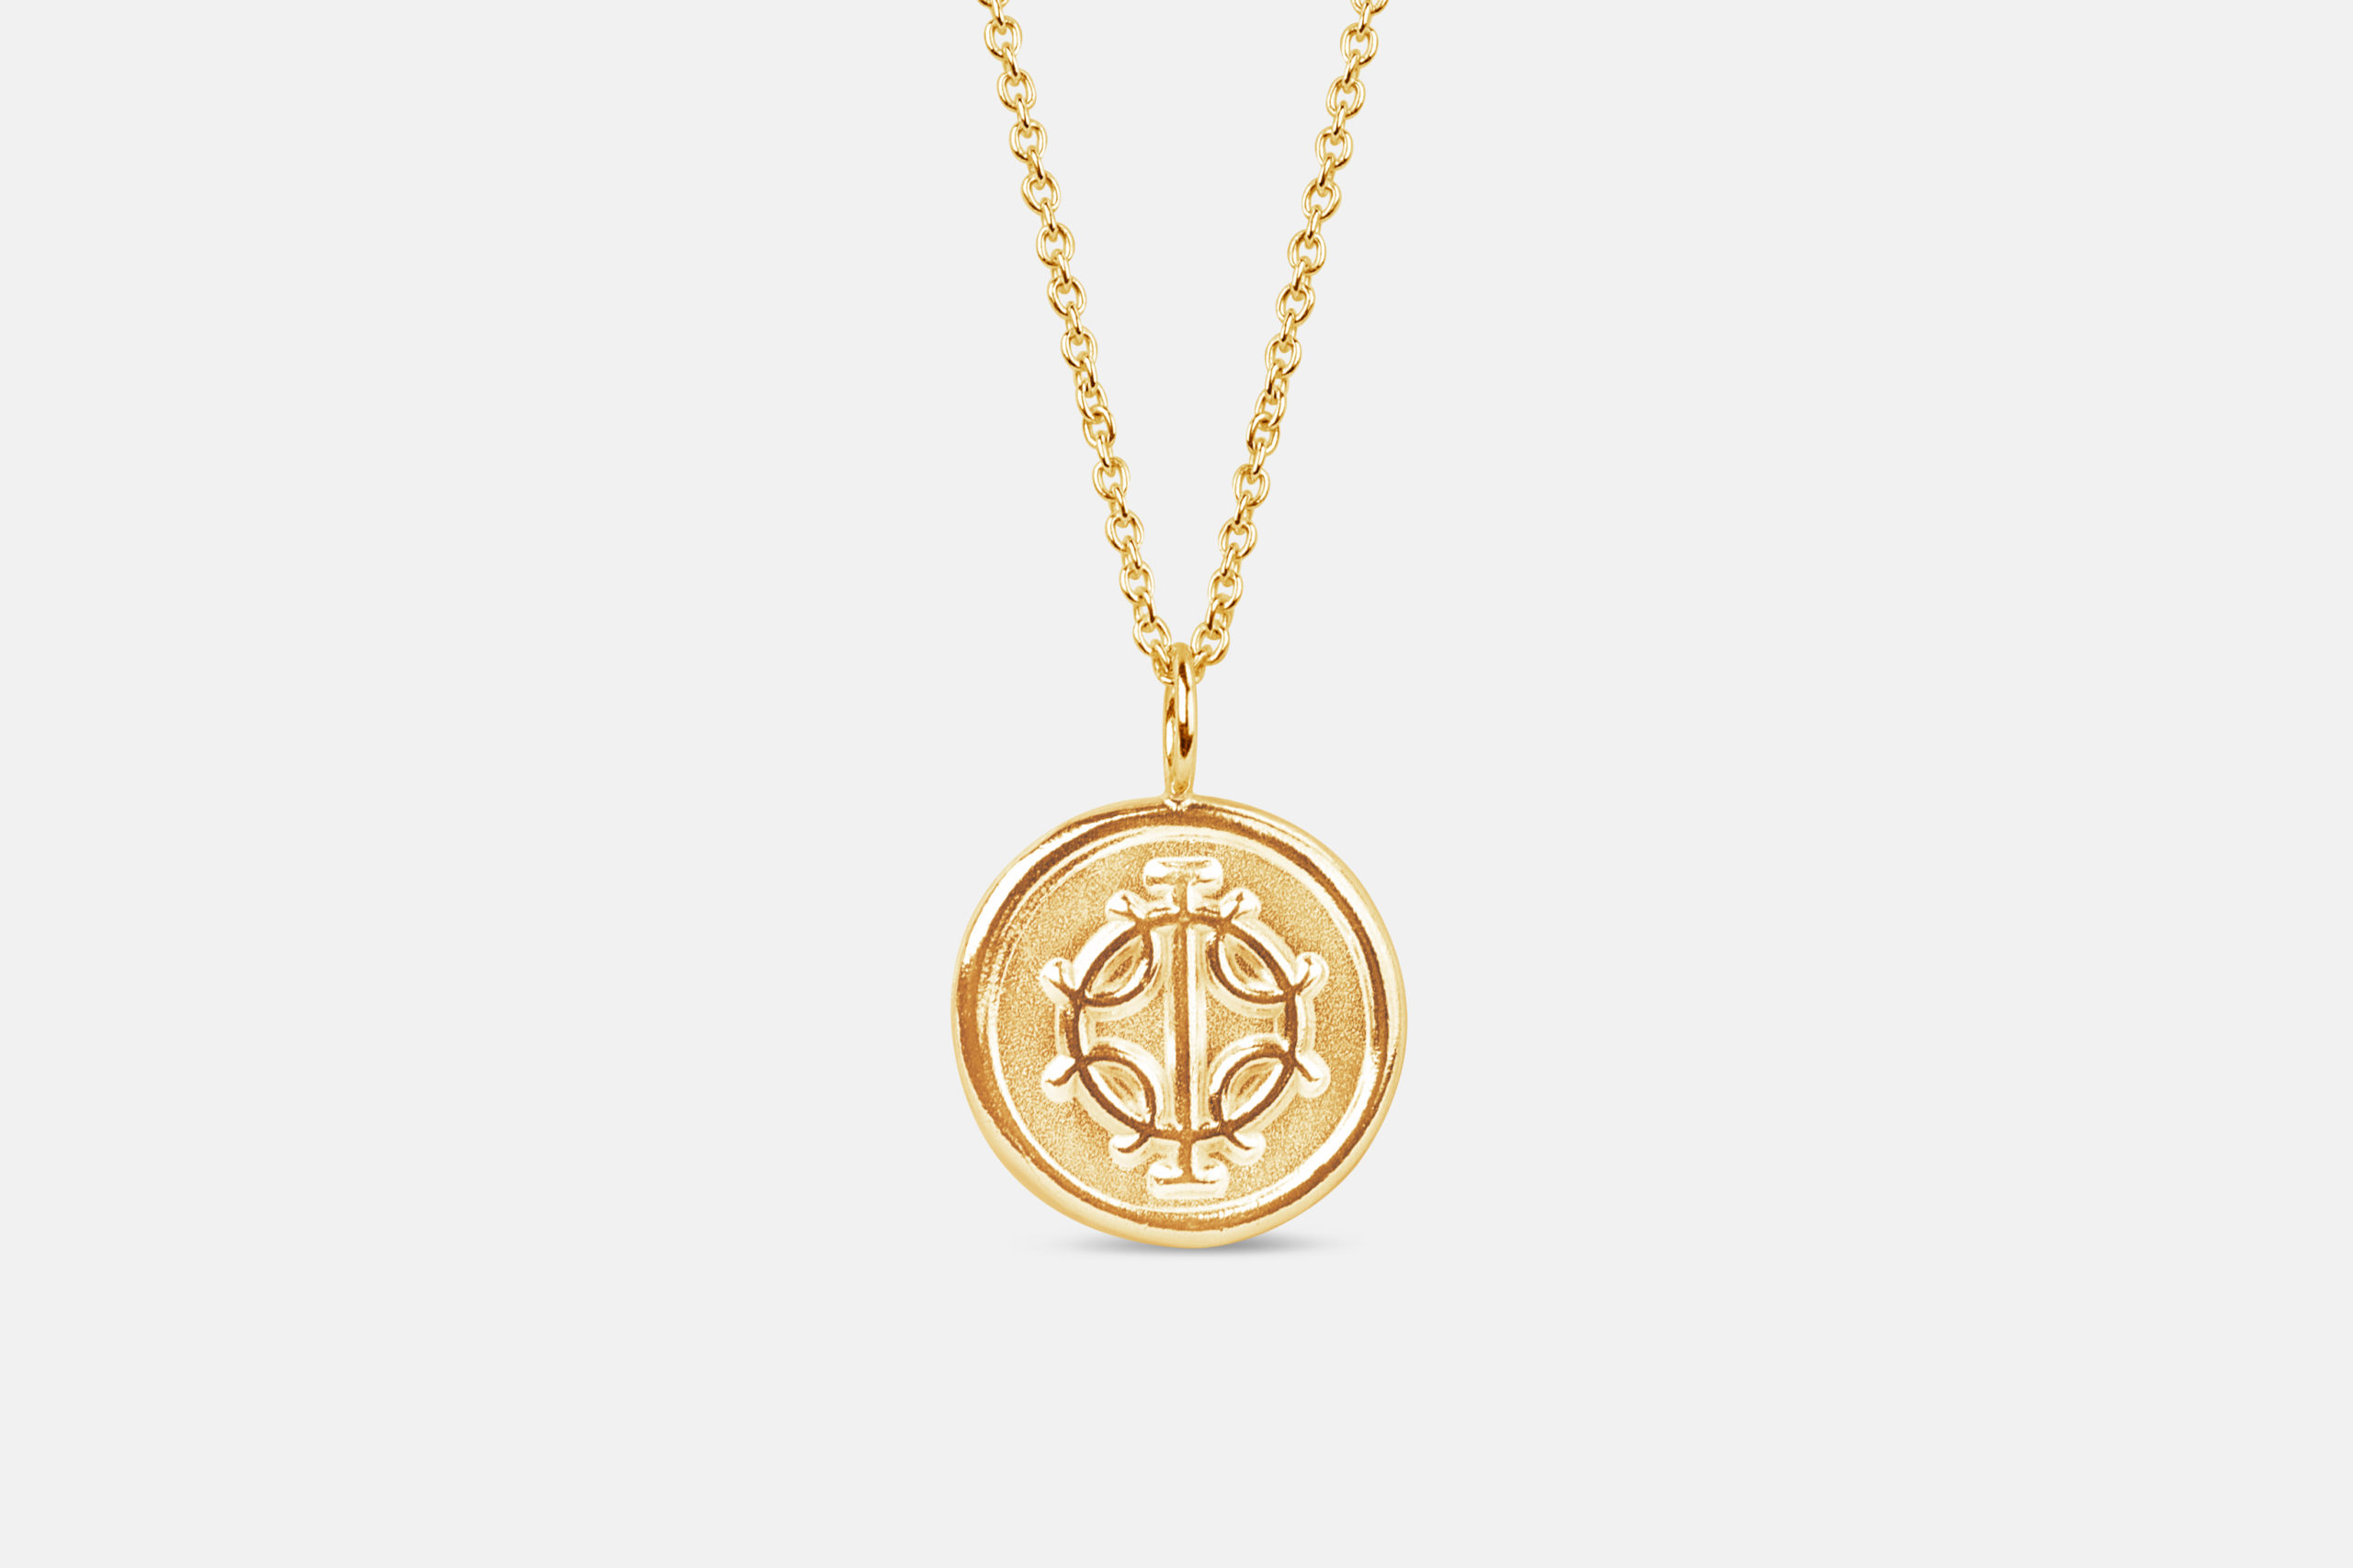 Icelandic magic stave necklace danobus wish manifestation symbol gold 14k